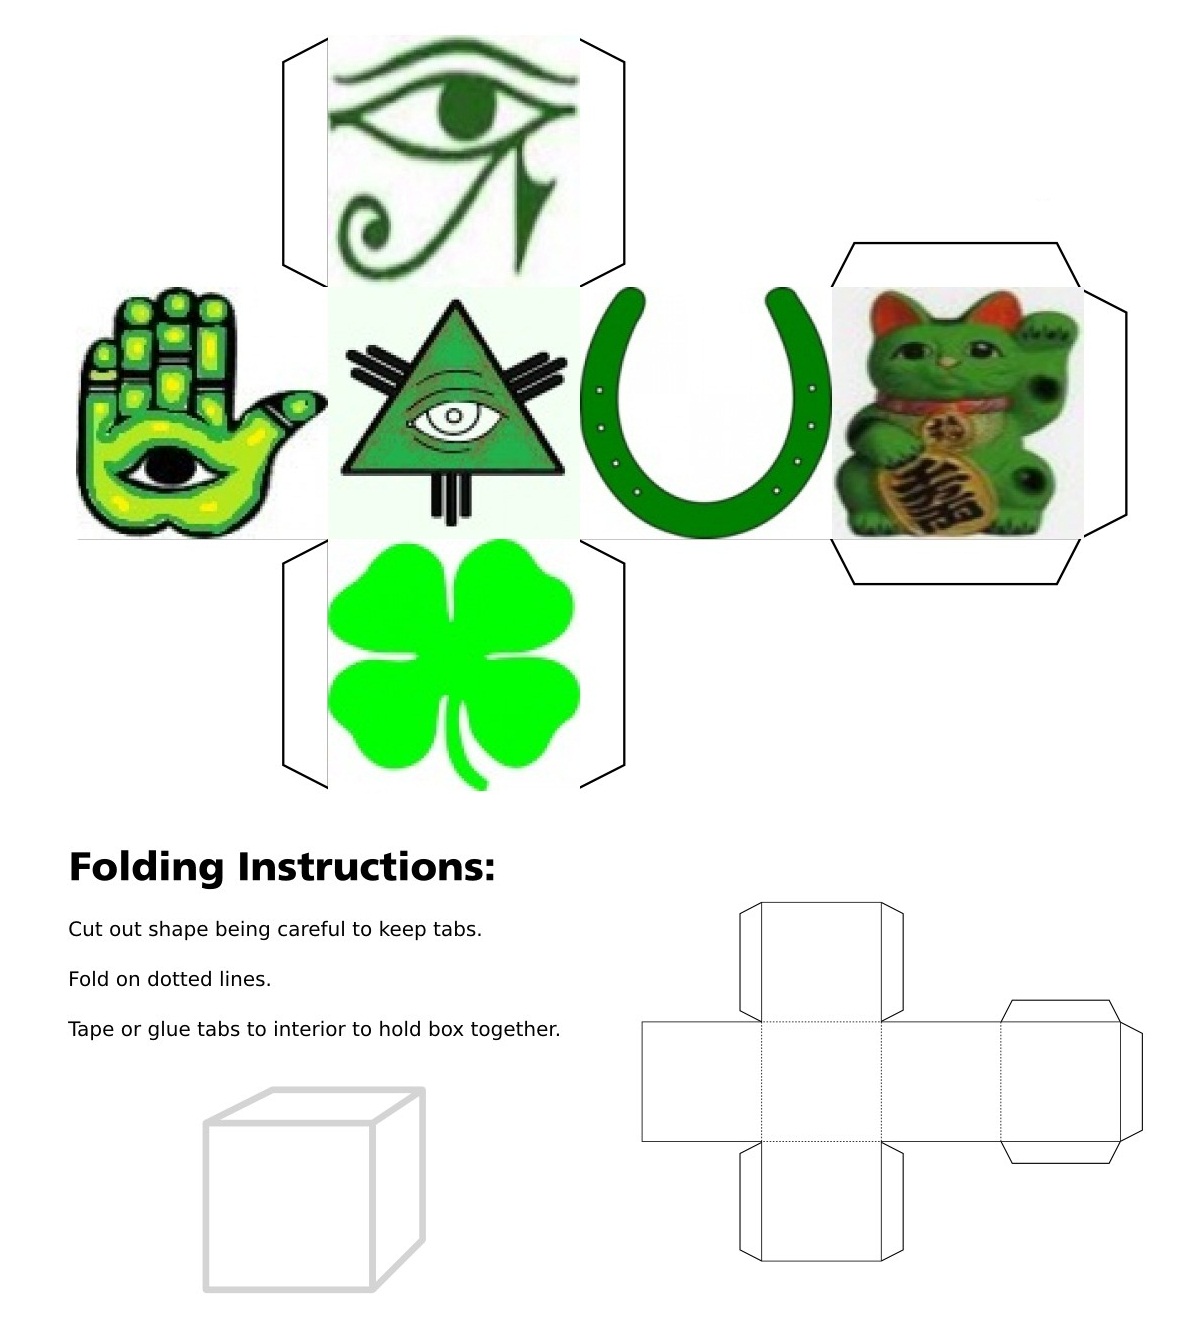 Cube, 3D Cube, Green Maneki Neko, Green Eye of Fatima, Green Eye of Horus, Green Eye of Providence, Green Four Leaf Clover, Green Horseshoe, Green Maneki Neko